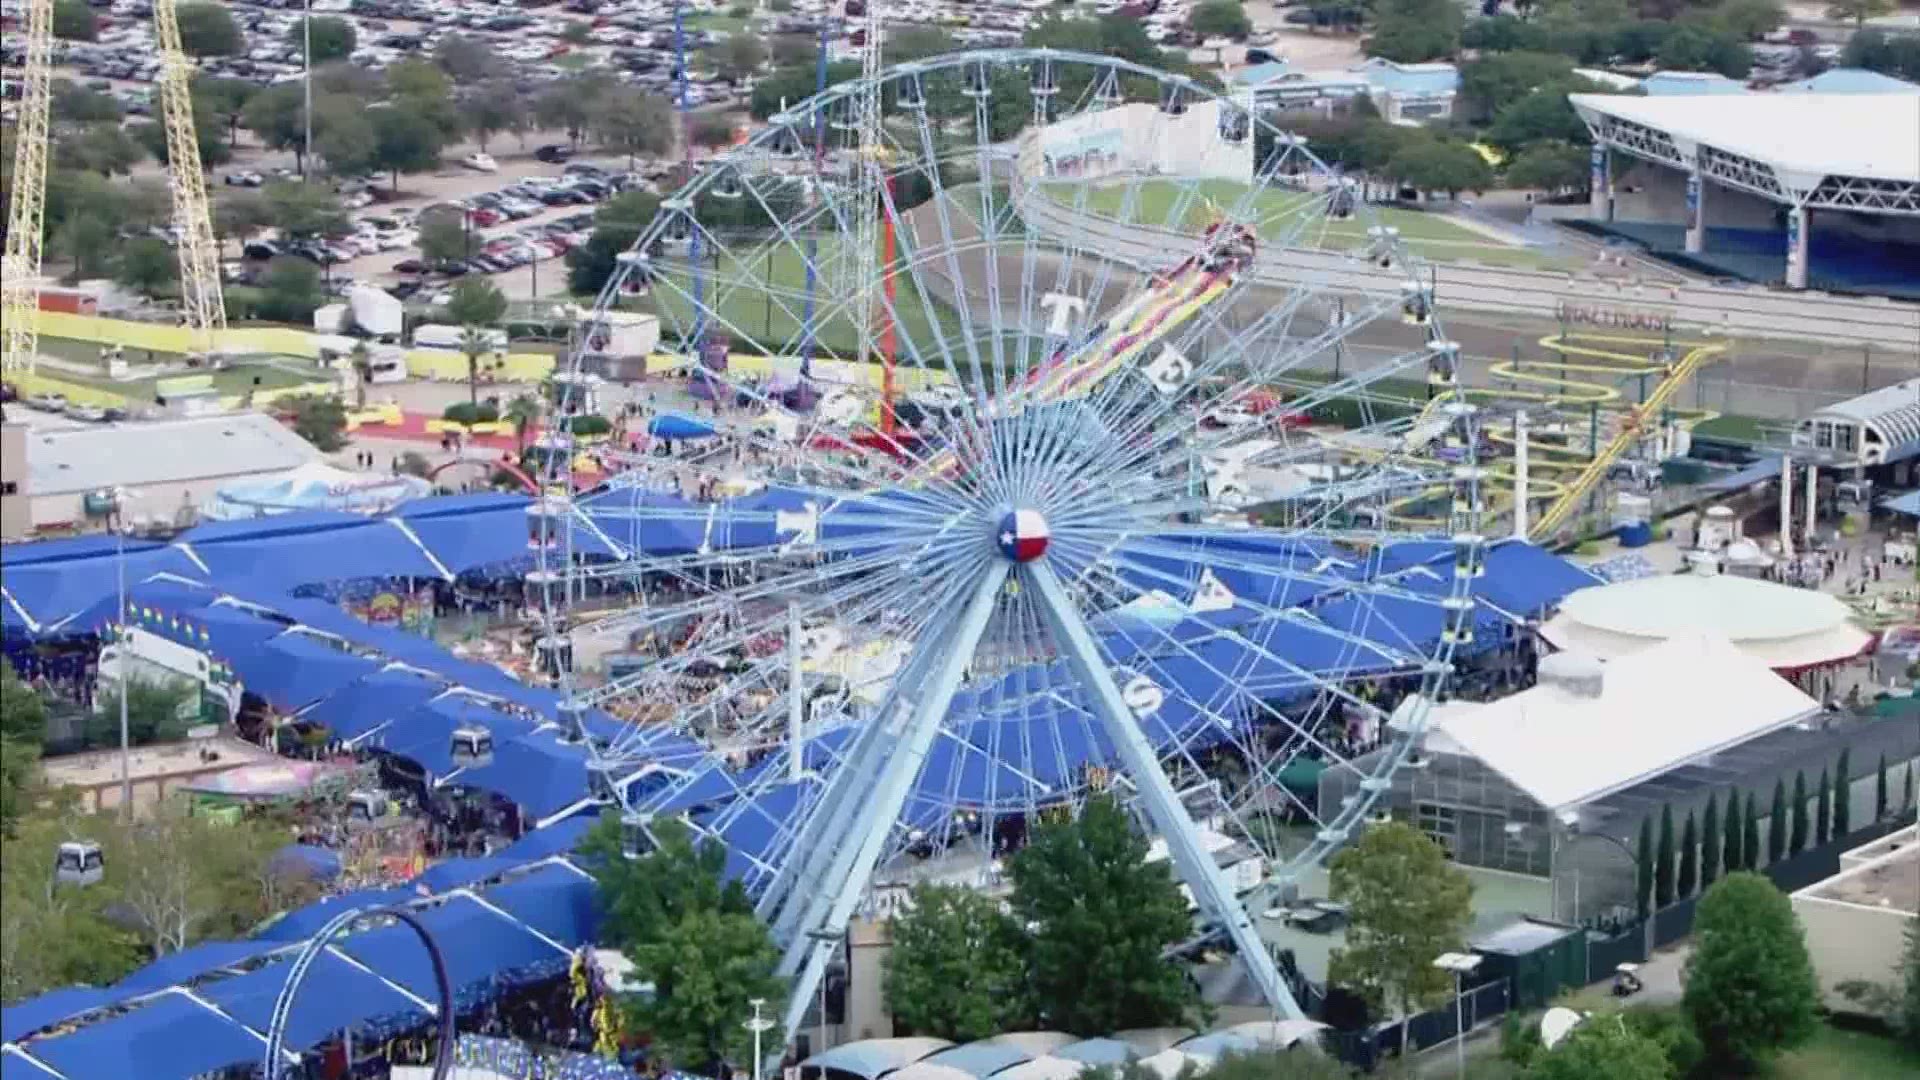 2021 Texas State Fair Big Tex is hiring!